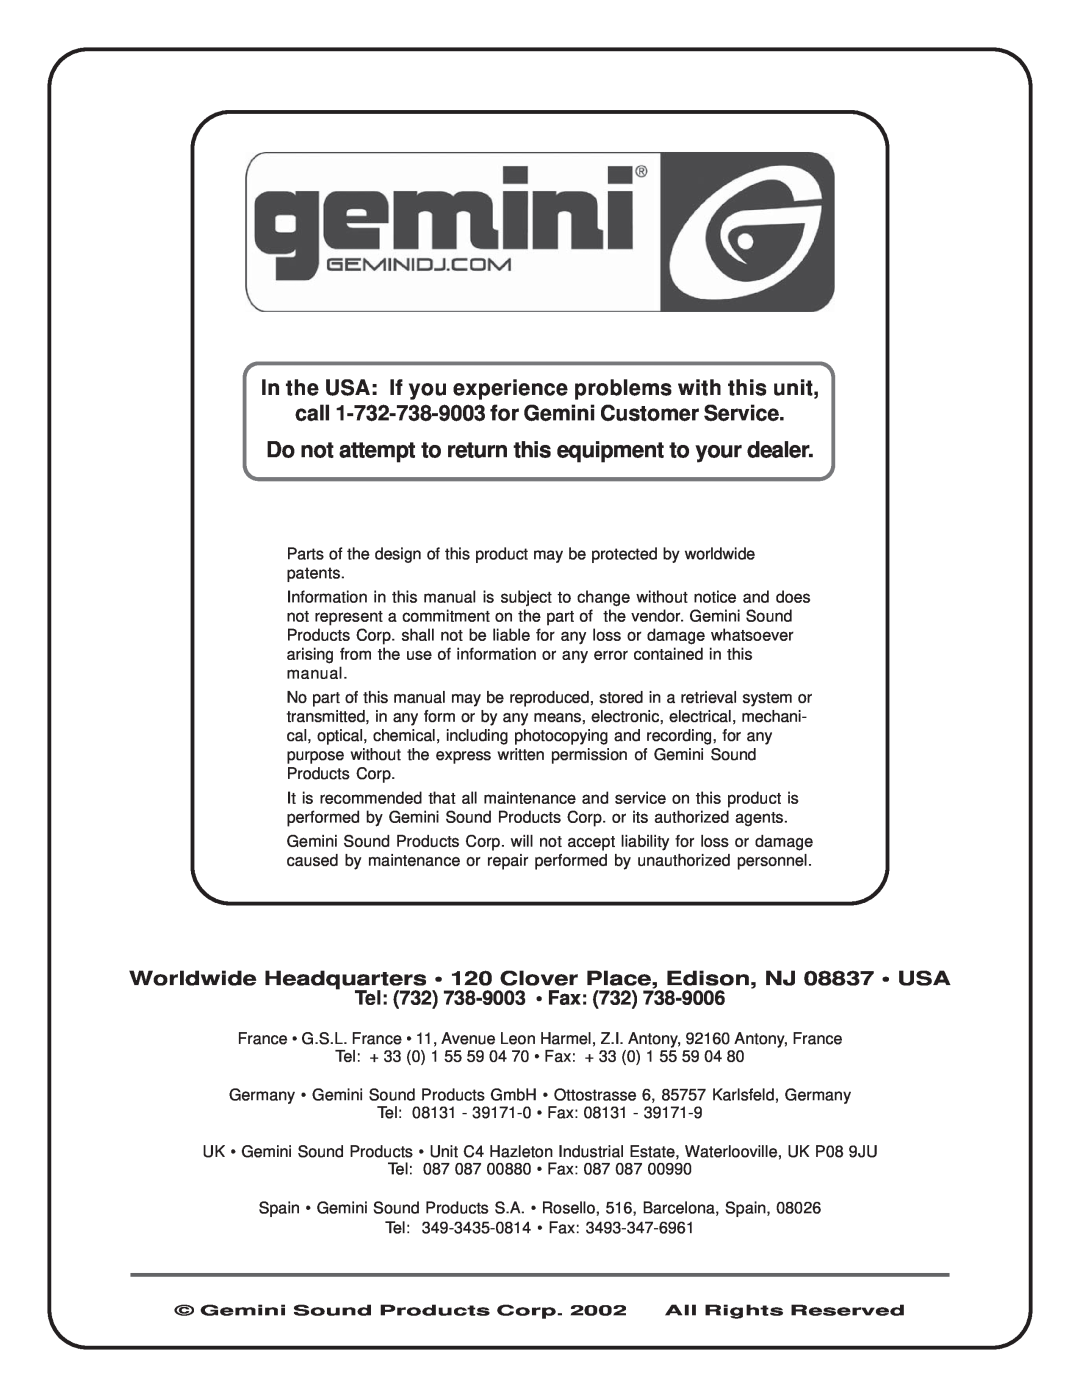 Gemini SA-2400 manual call 1-732-738-9003for Gemini Customer Service, Tel 732 738-9003 Fax 